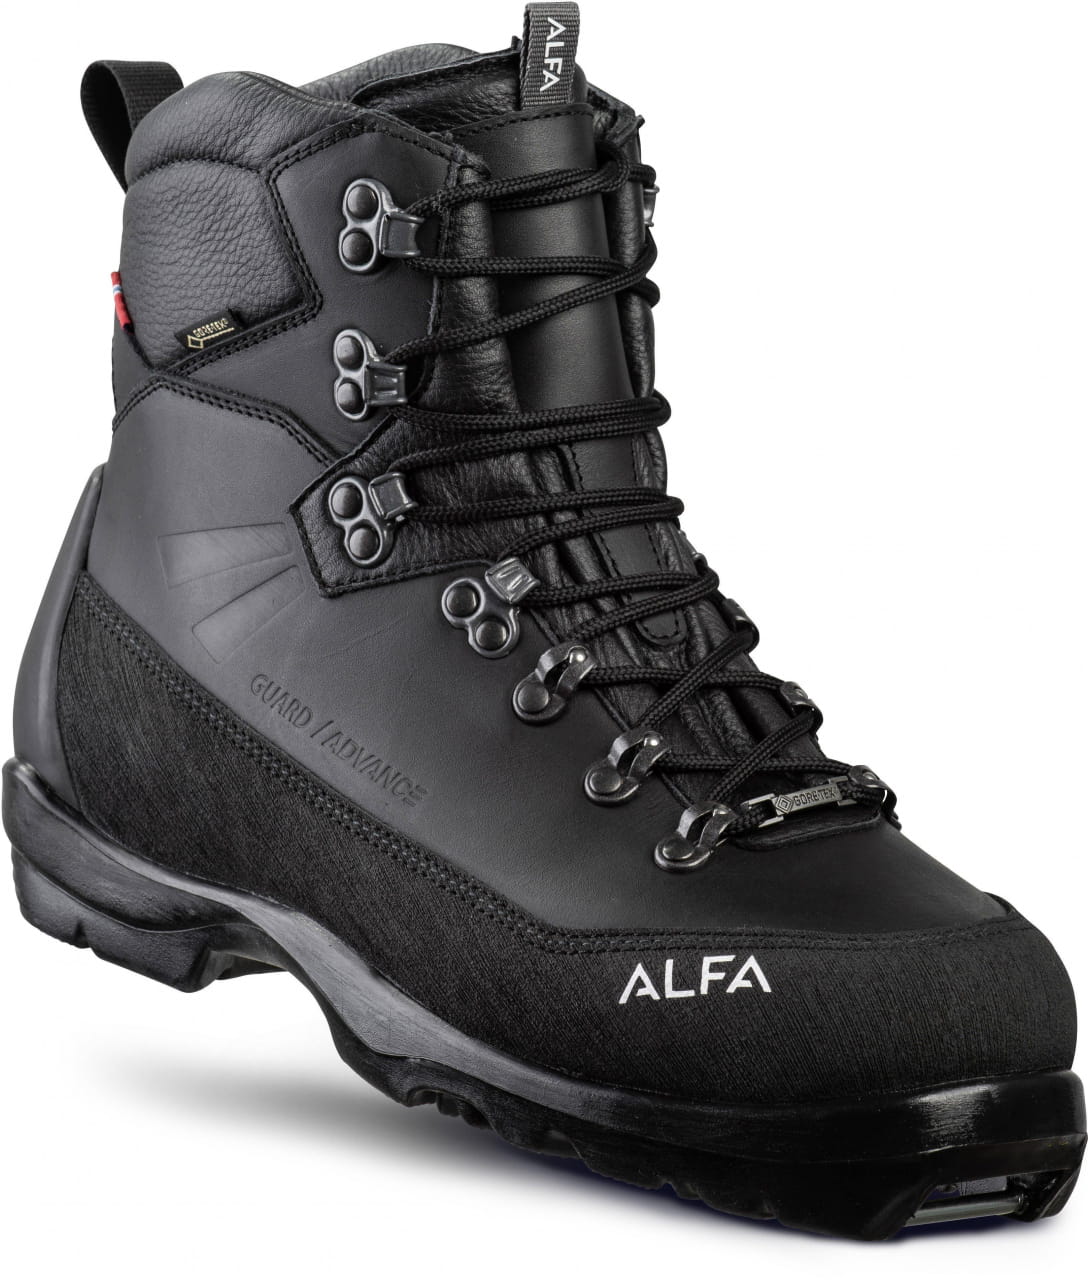 Chaussures de ski de fond pour hommes Alfa Guard Advance GTX M